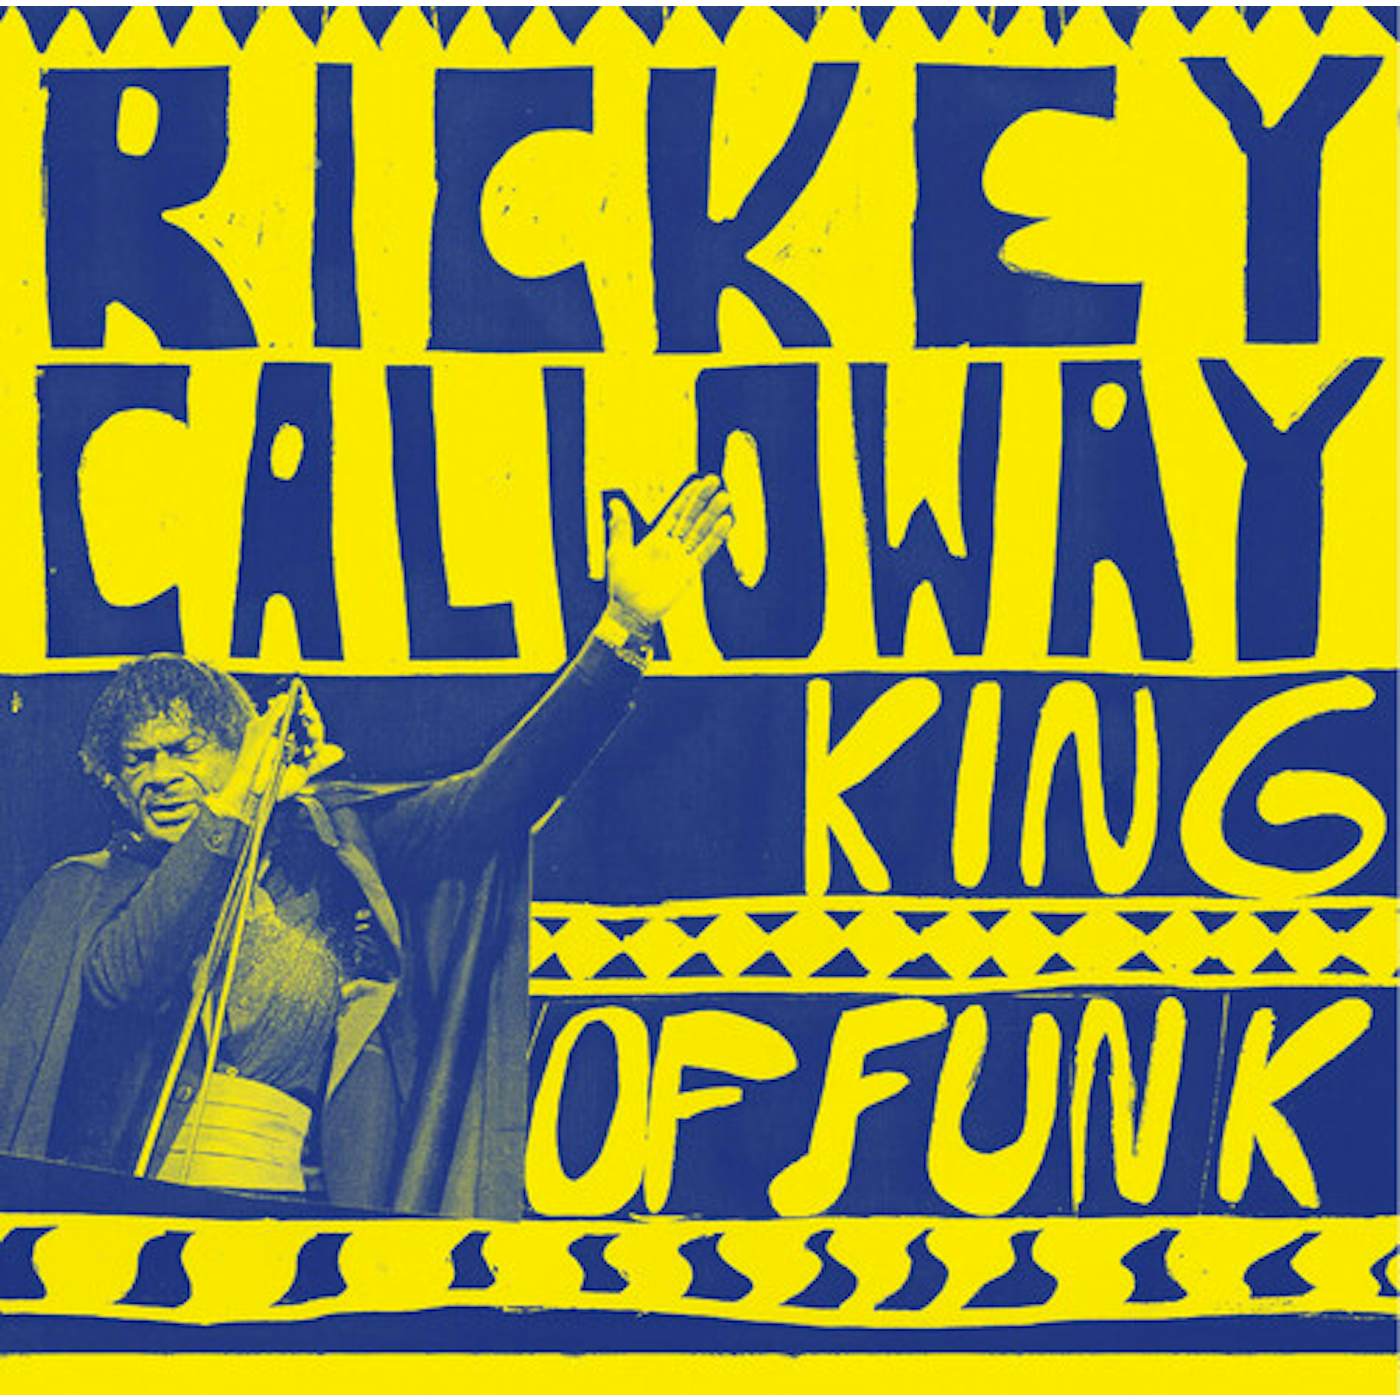 Rickey Calloway KING OF FUNK Vinyl Record